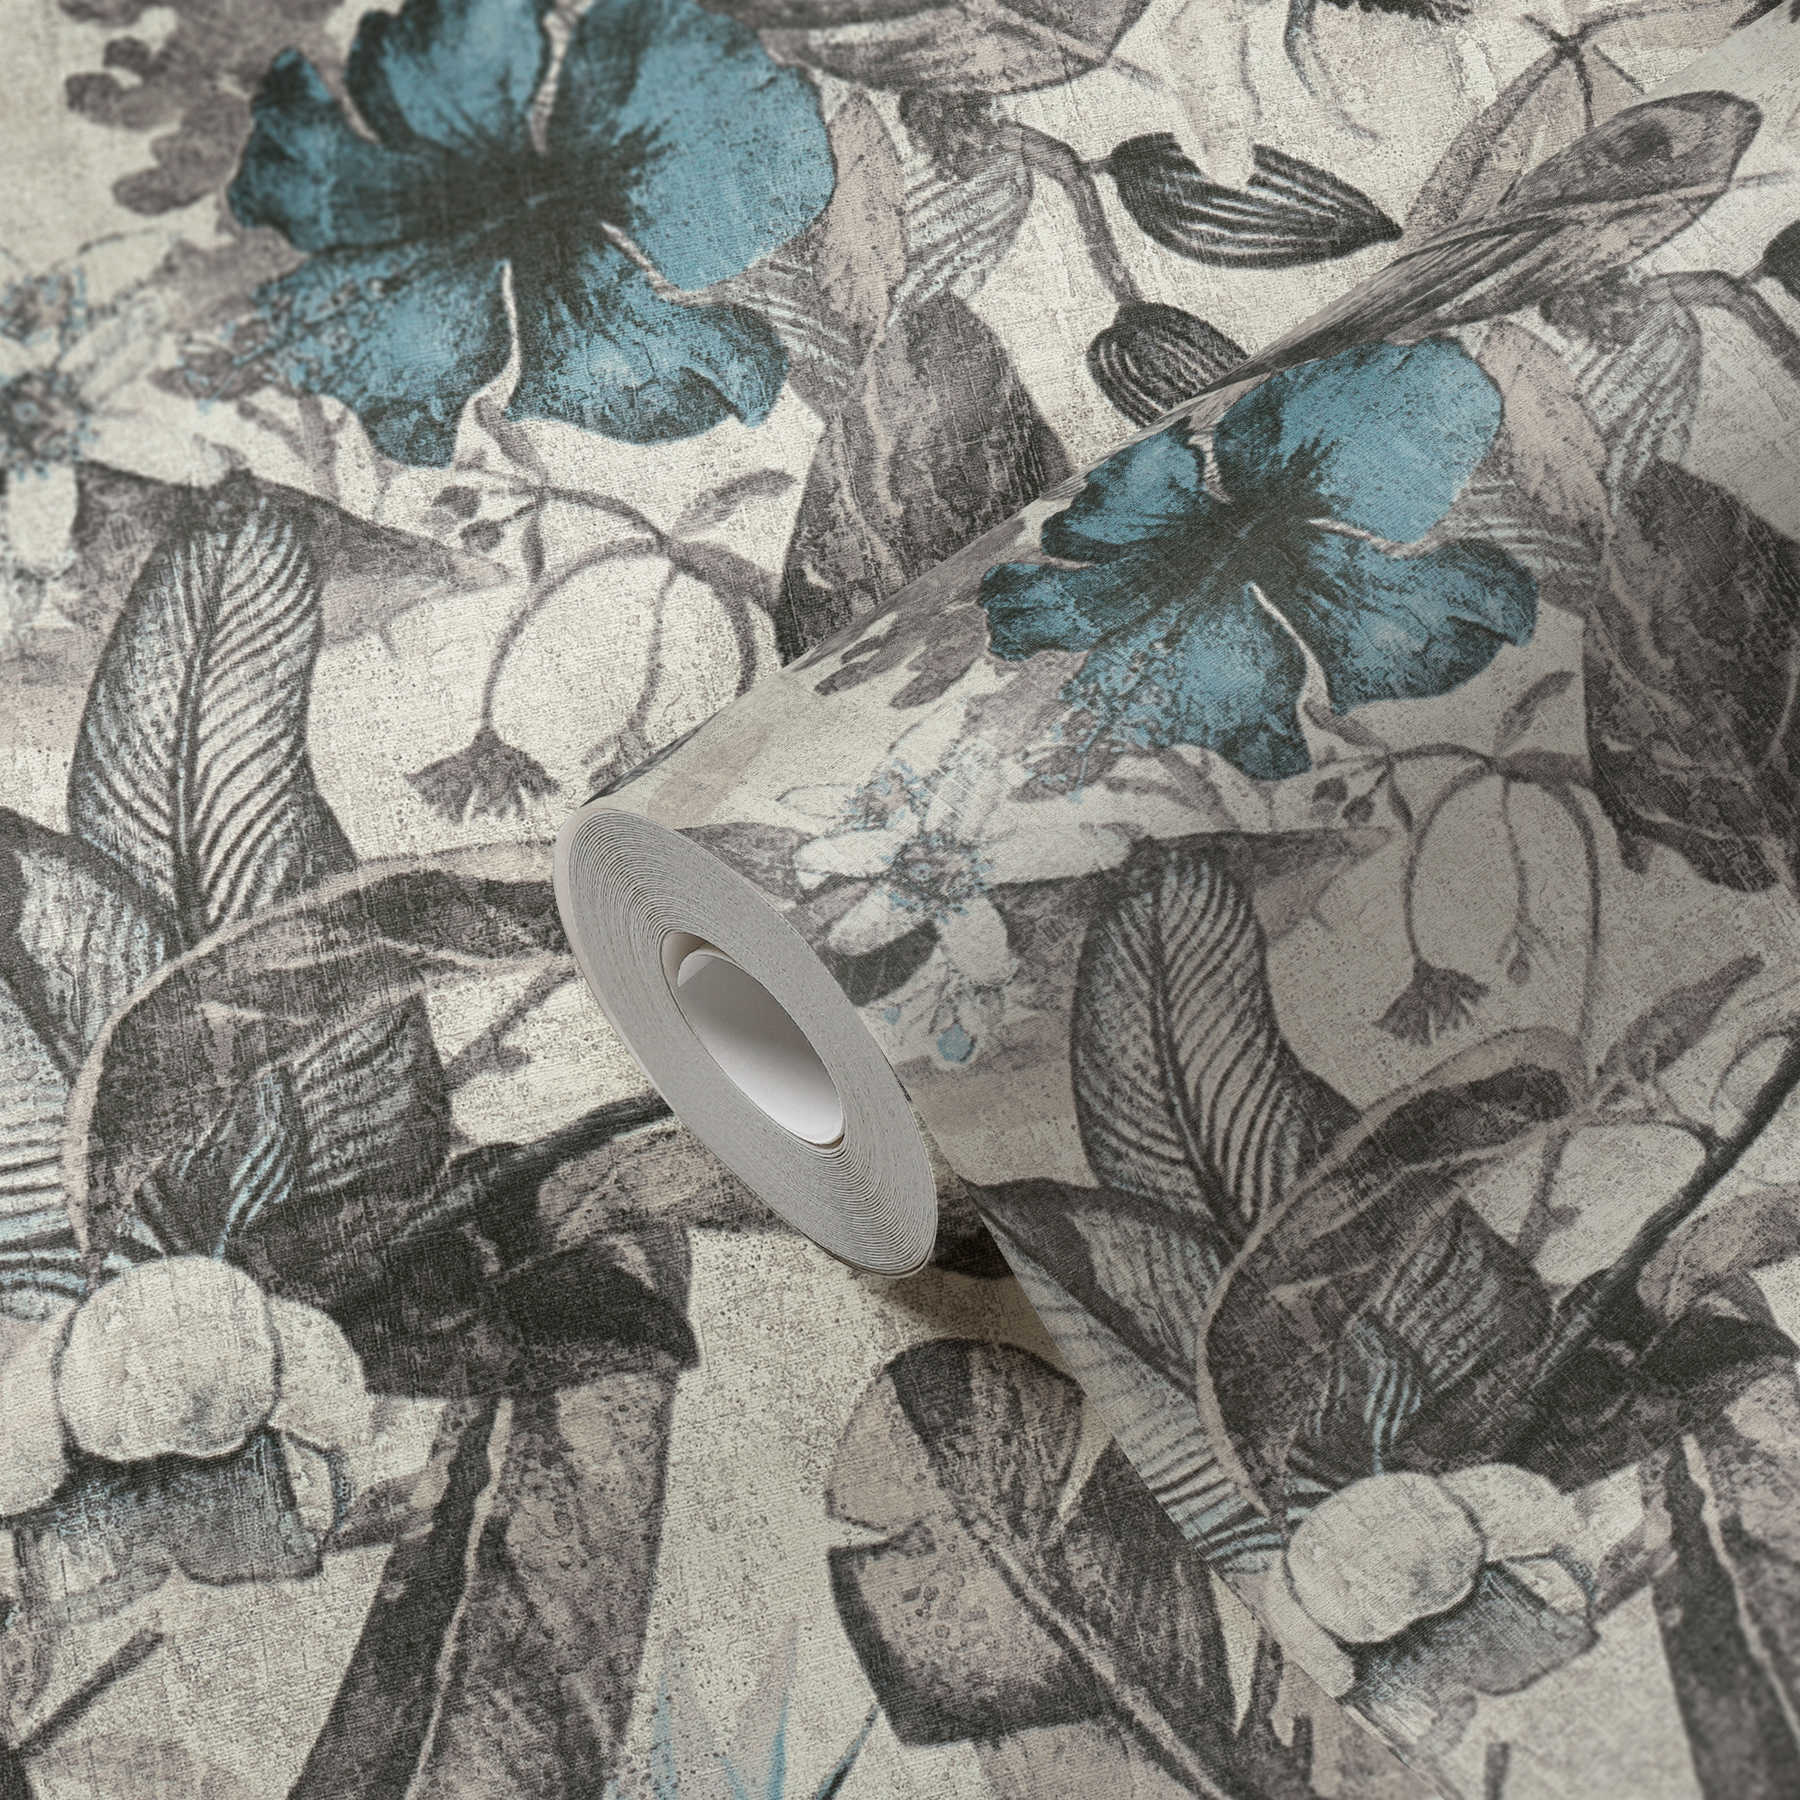             Papier peint motif fleurs tropicales aspect textile - bleu, gris, noir
        